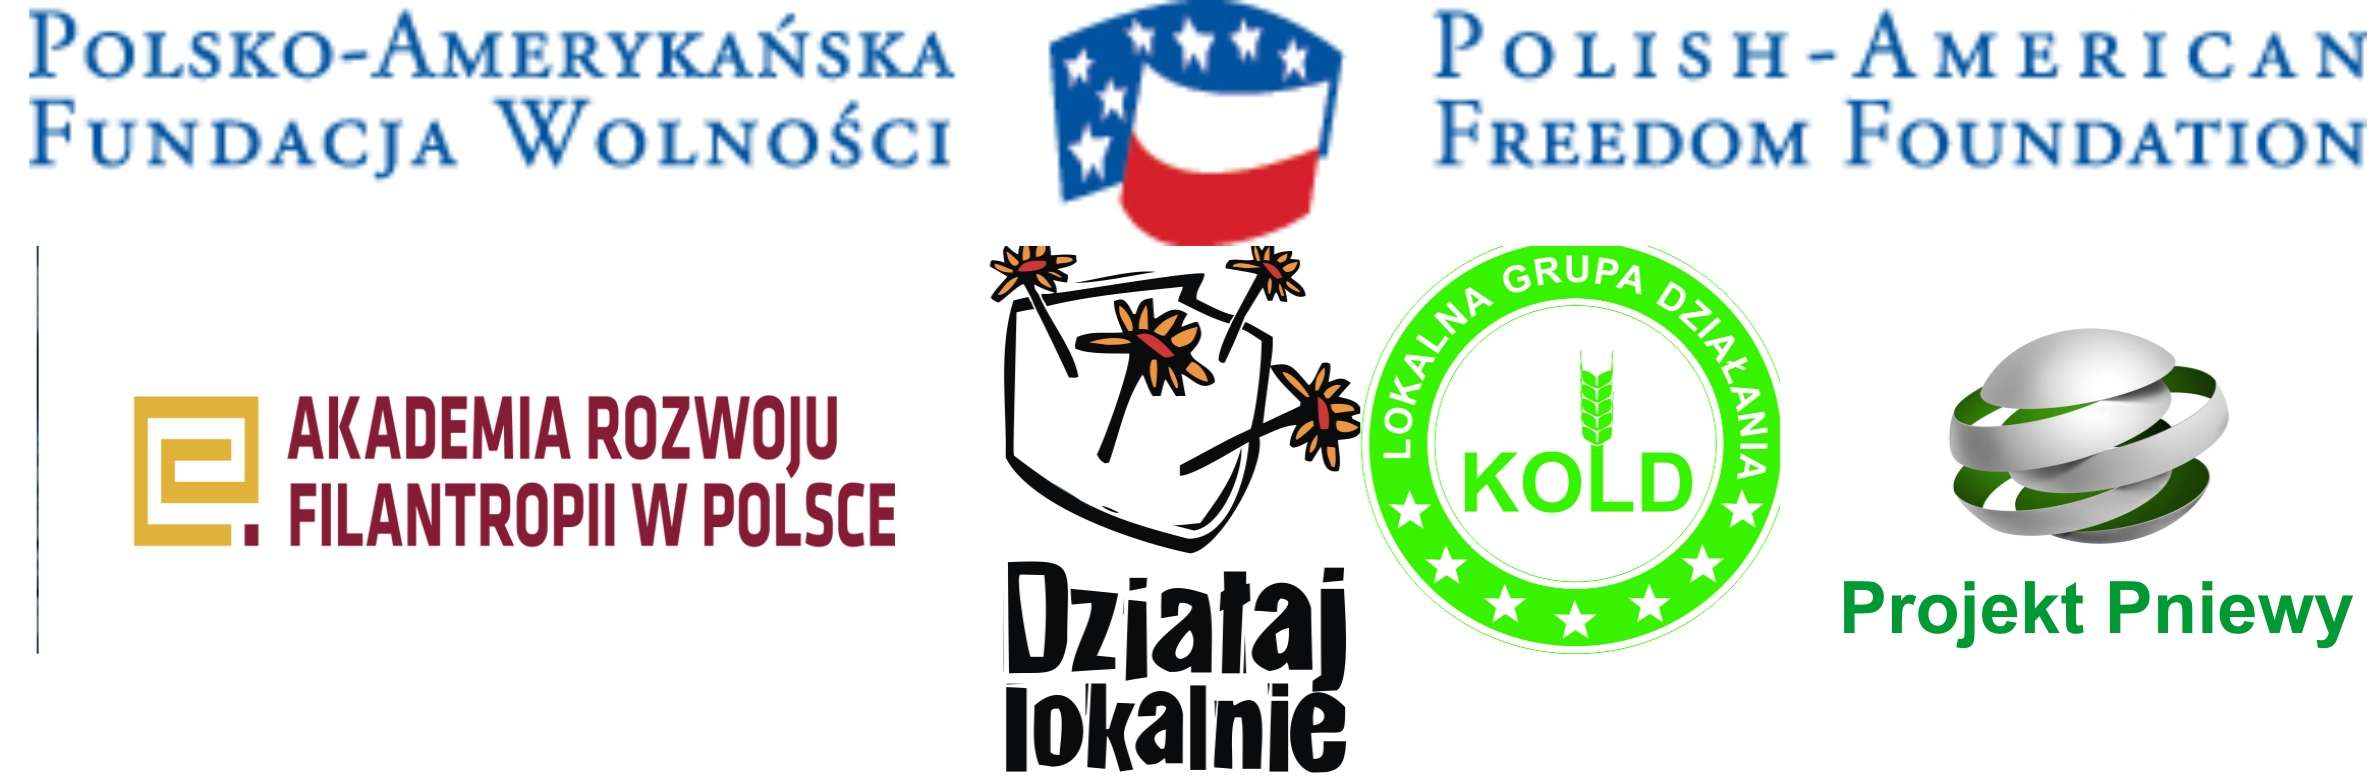 Polsko Amerykańska Fundacja Wolności